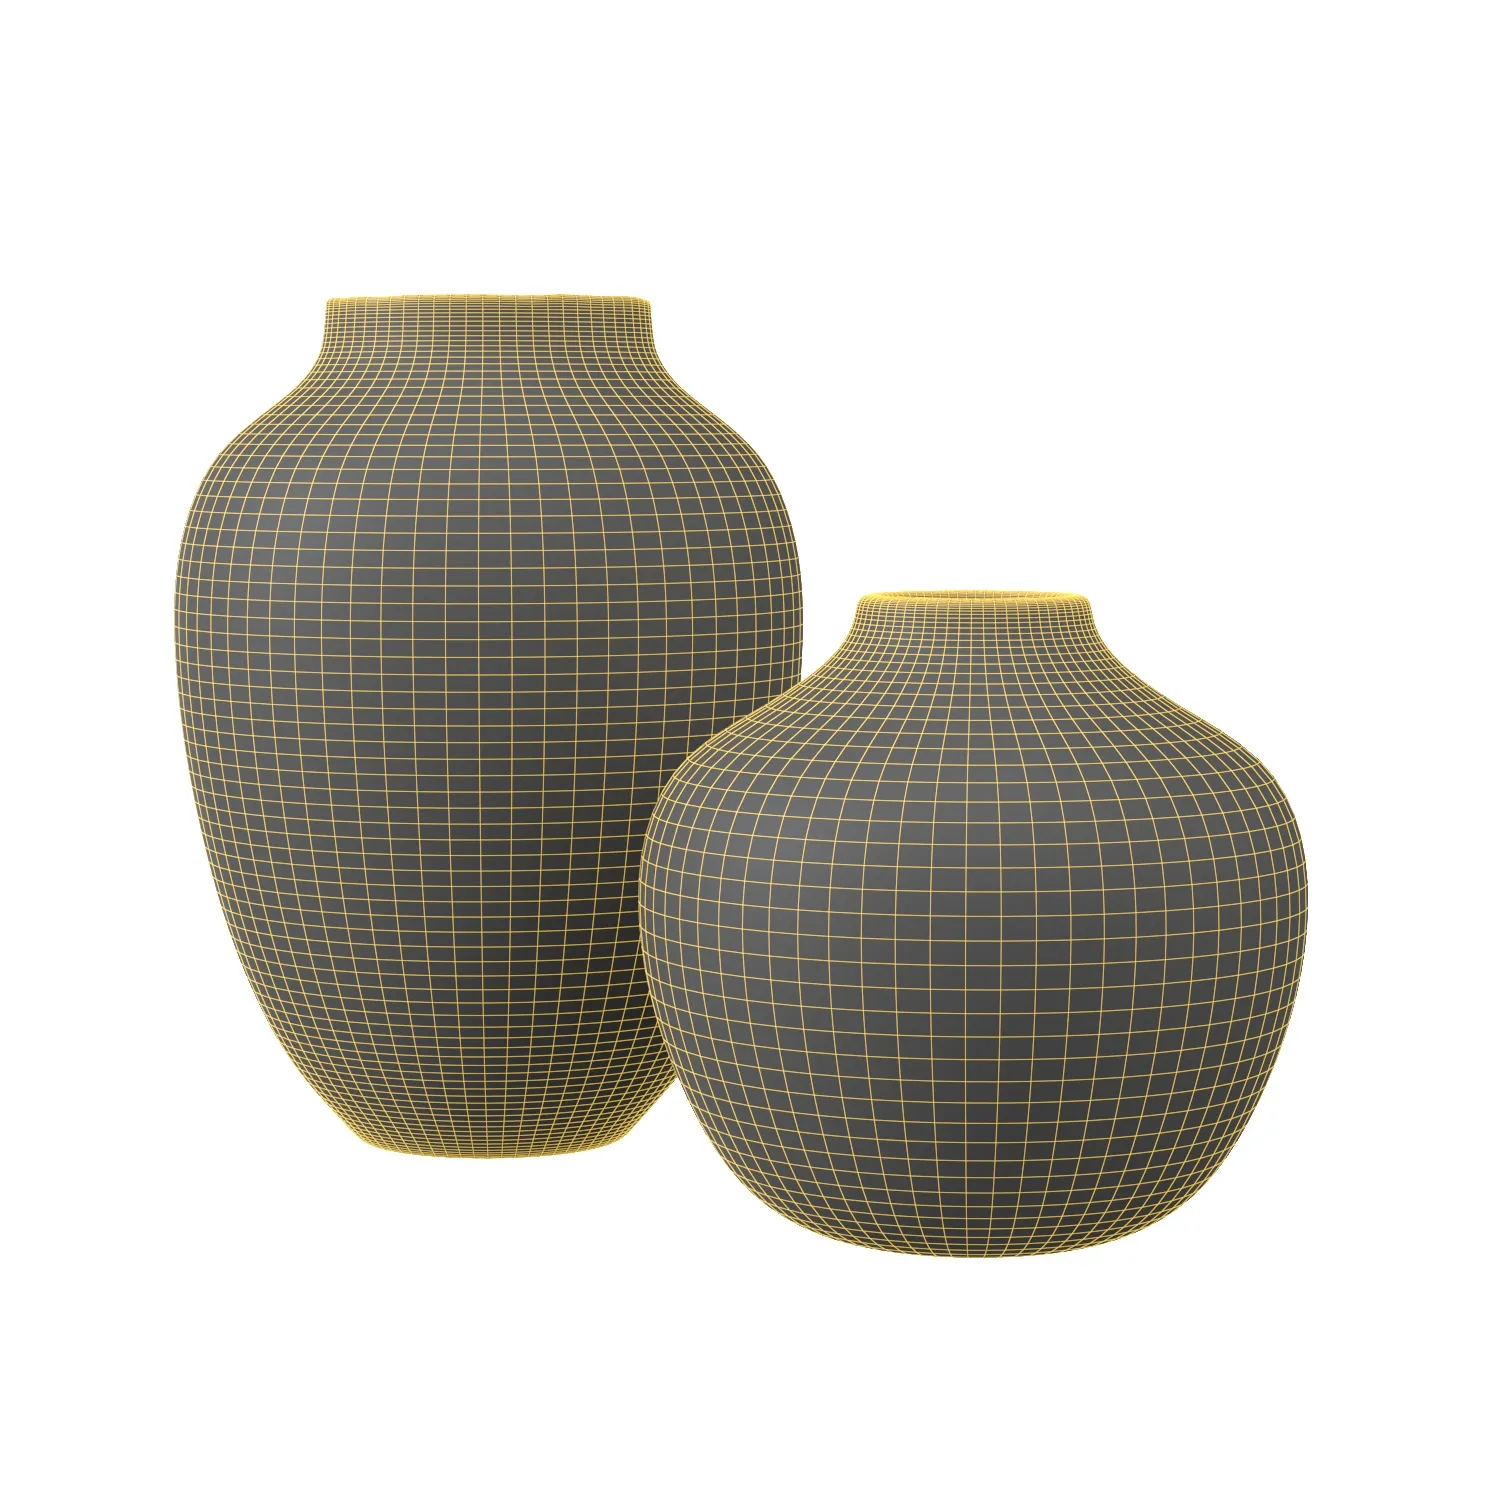 Isolde Glass Vase PBR 3D Model_07